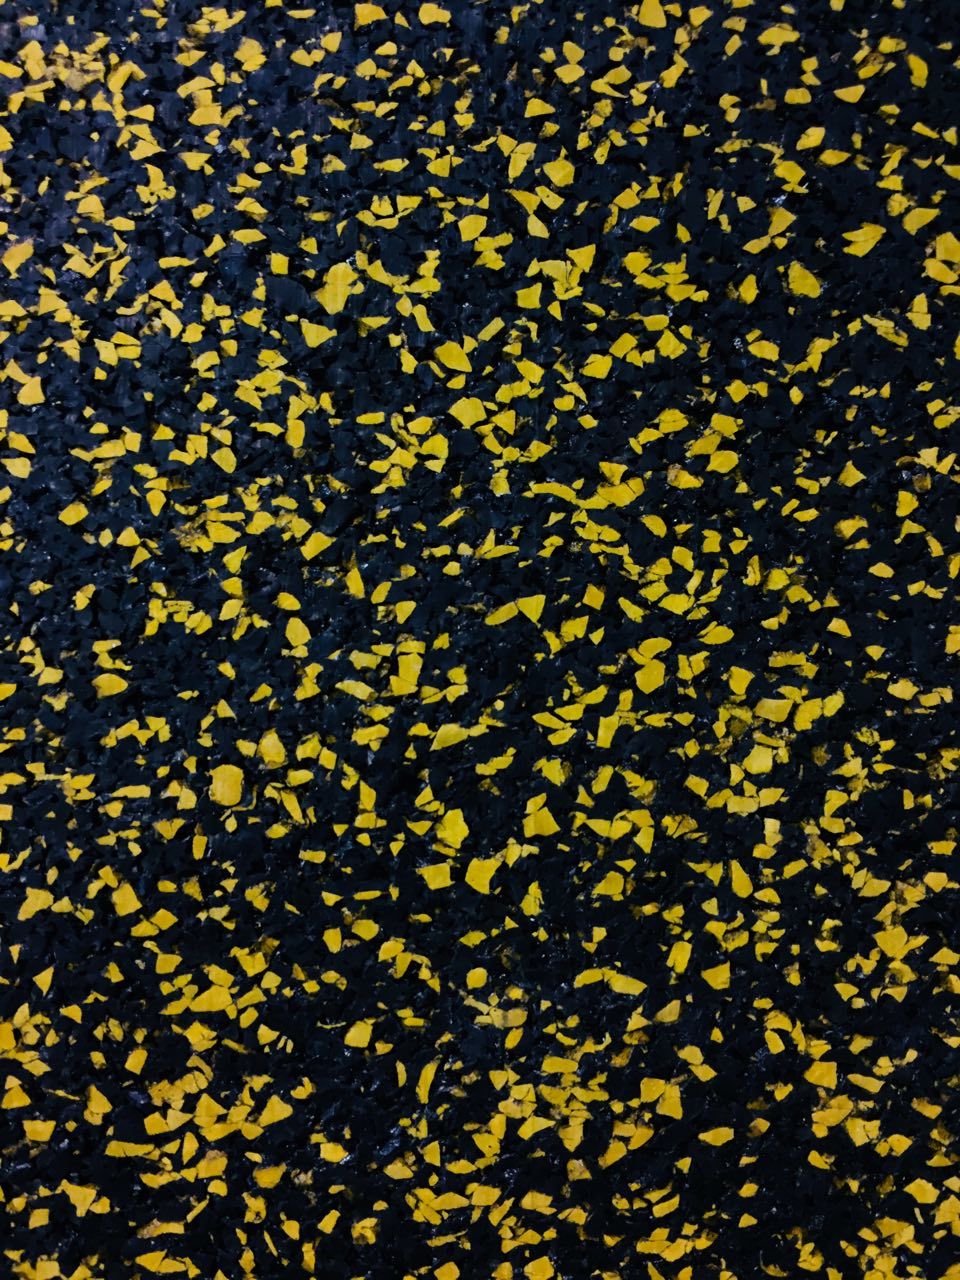 Желтые крошки. Regupol 6215. Регупол Manaus. Резиновое покрытие для детских площадок текстура. Резиновое покрытие желтое.